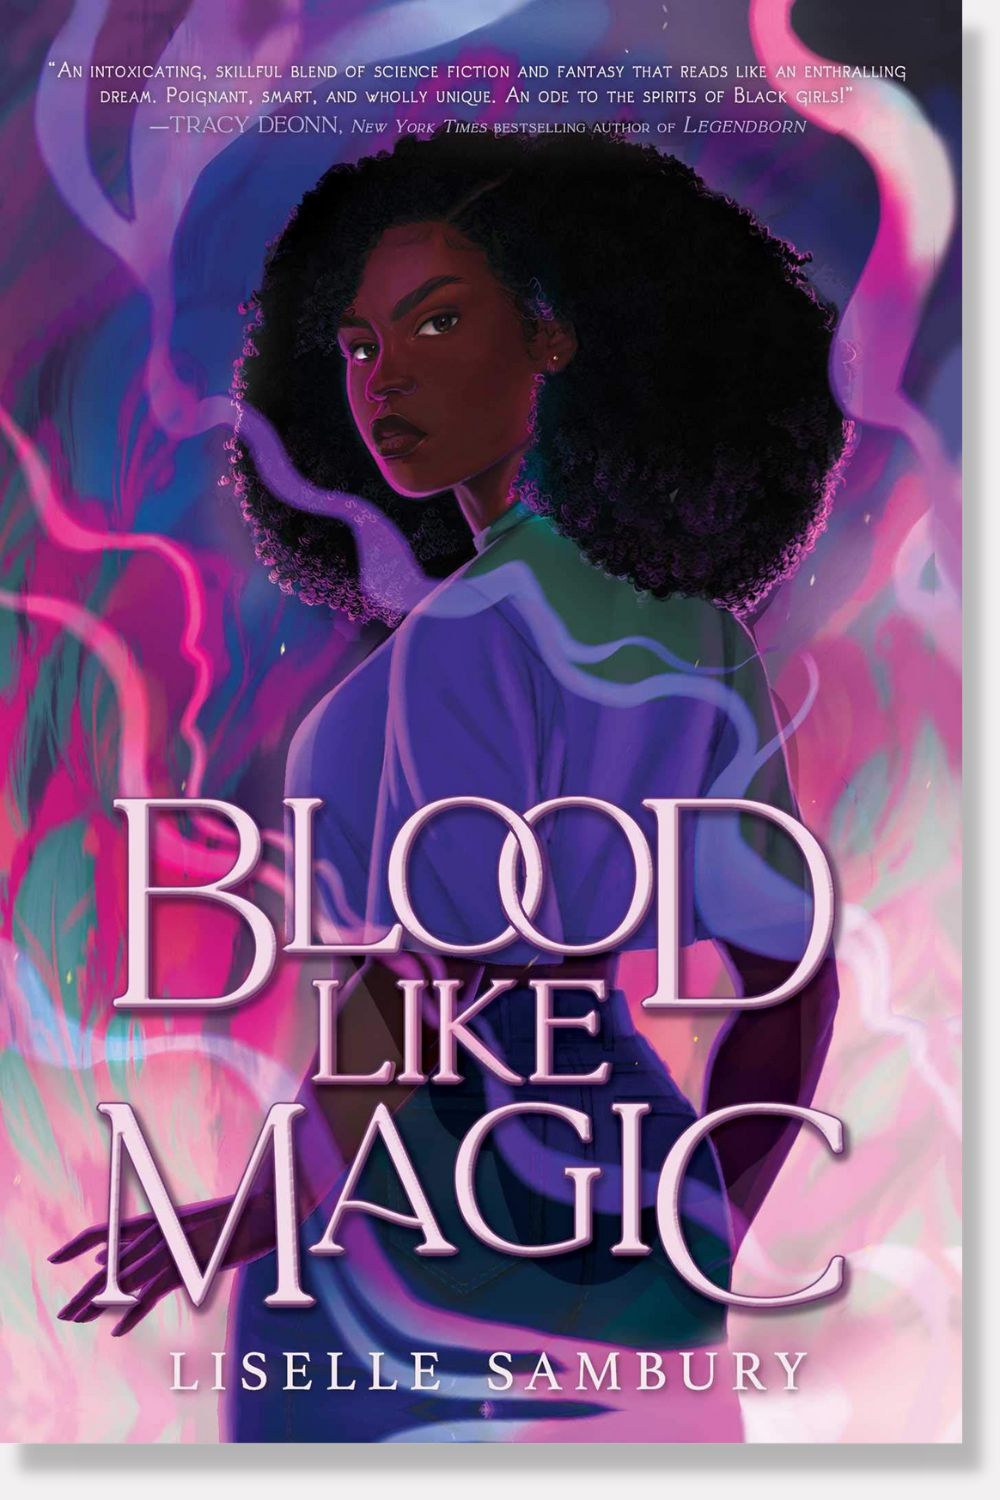 Blood Like Magic by Liselle Sambury - book cover